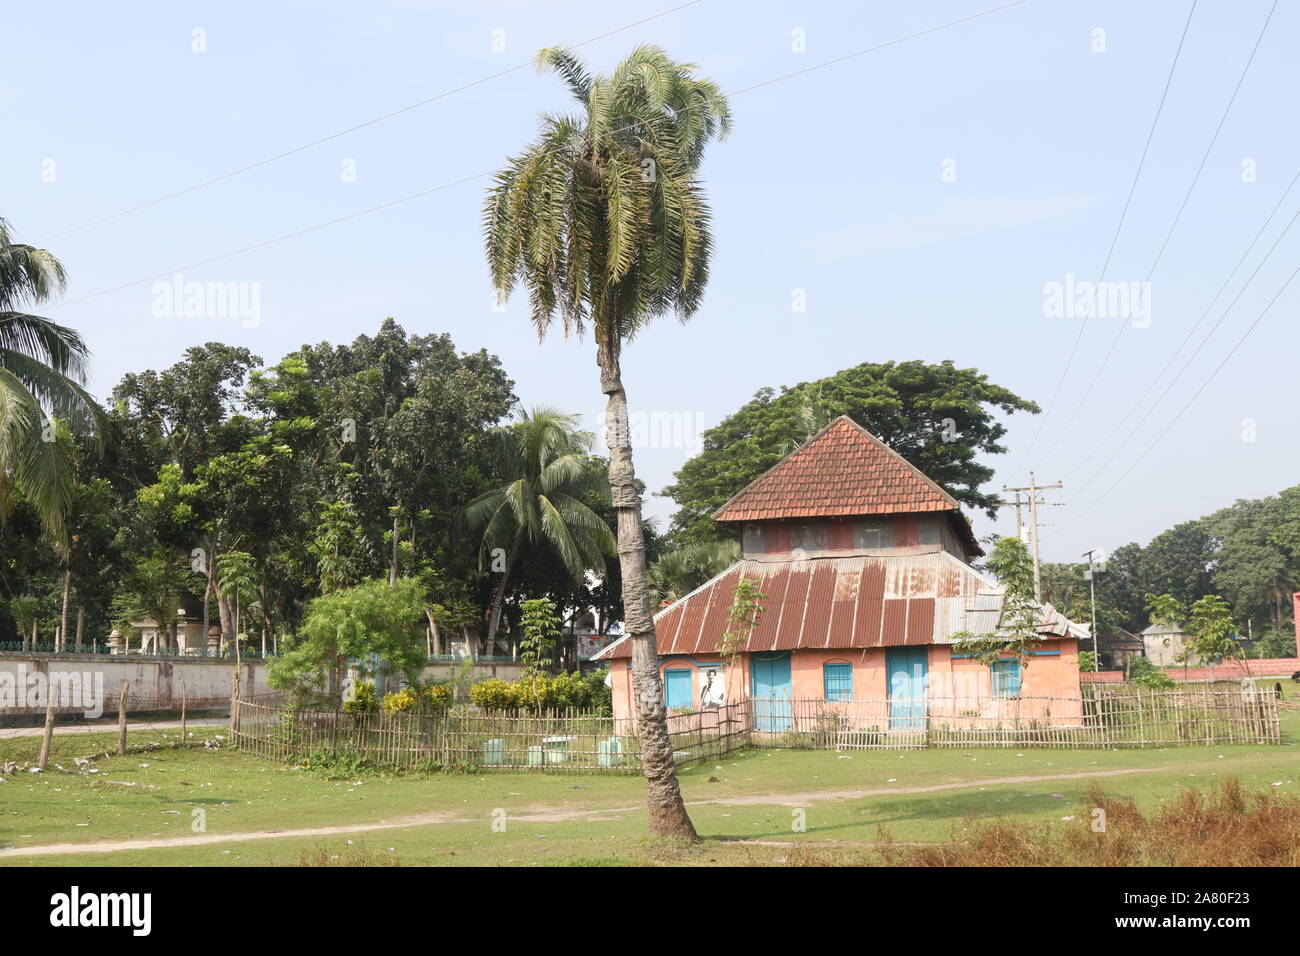 Histoire du Bangladesh a dit que beaucoup d'ancien bâtiment avait fait dans ce pays. Teota Teota Manikgan palace,,, Dhaka, Bangladesh est l'un d'entre eux. Water Lily est la fleur nationale du Banglades. Banque D'Images